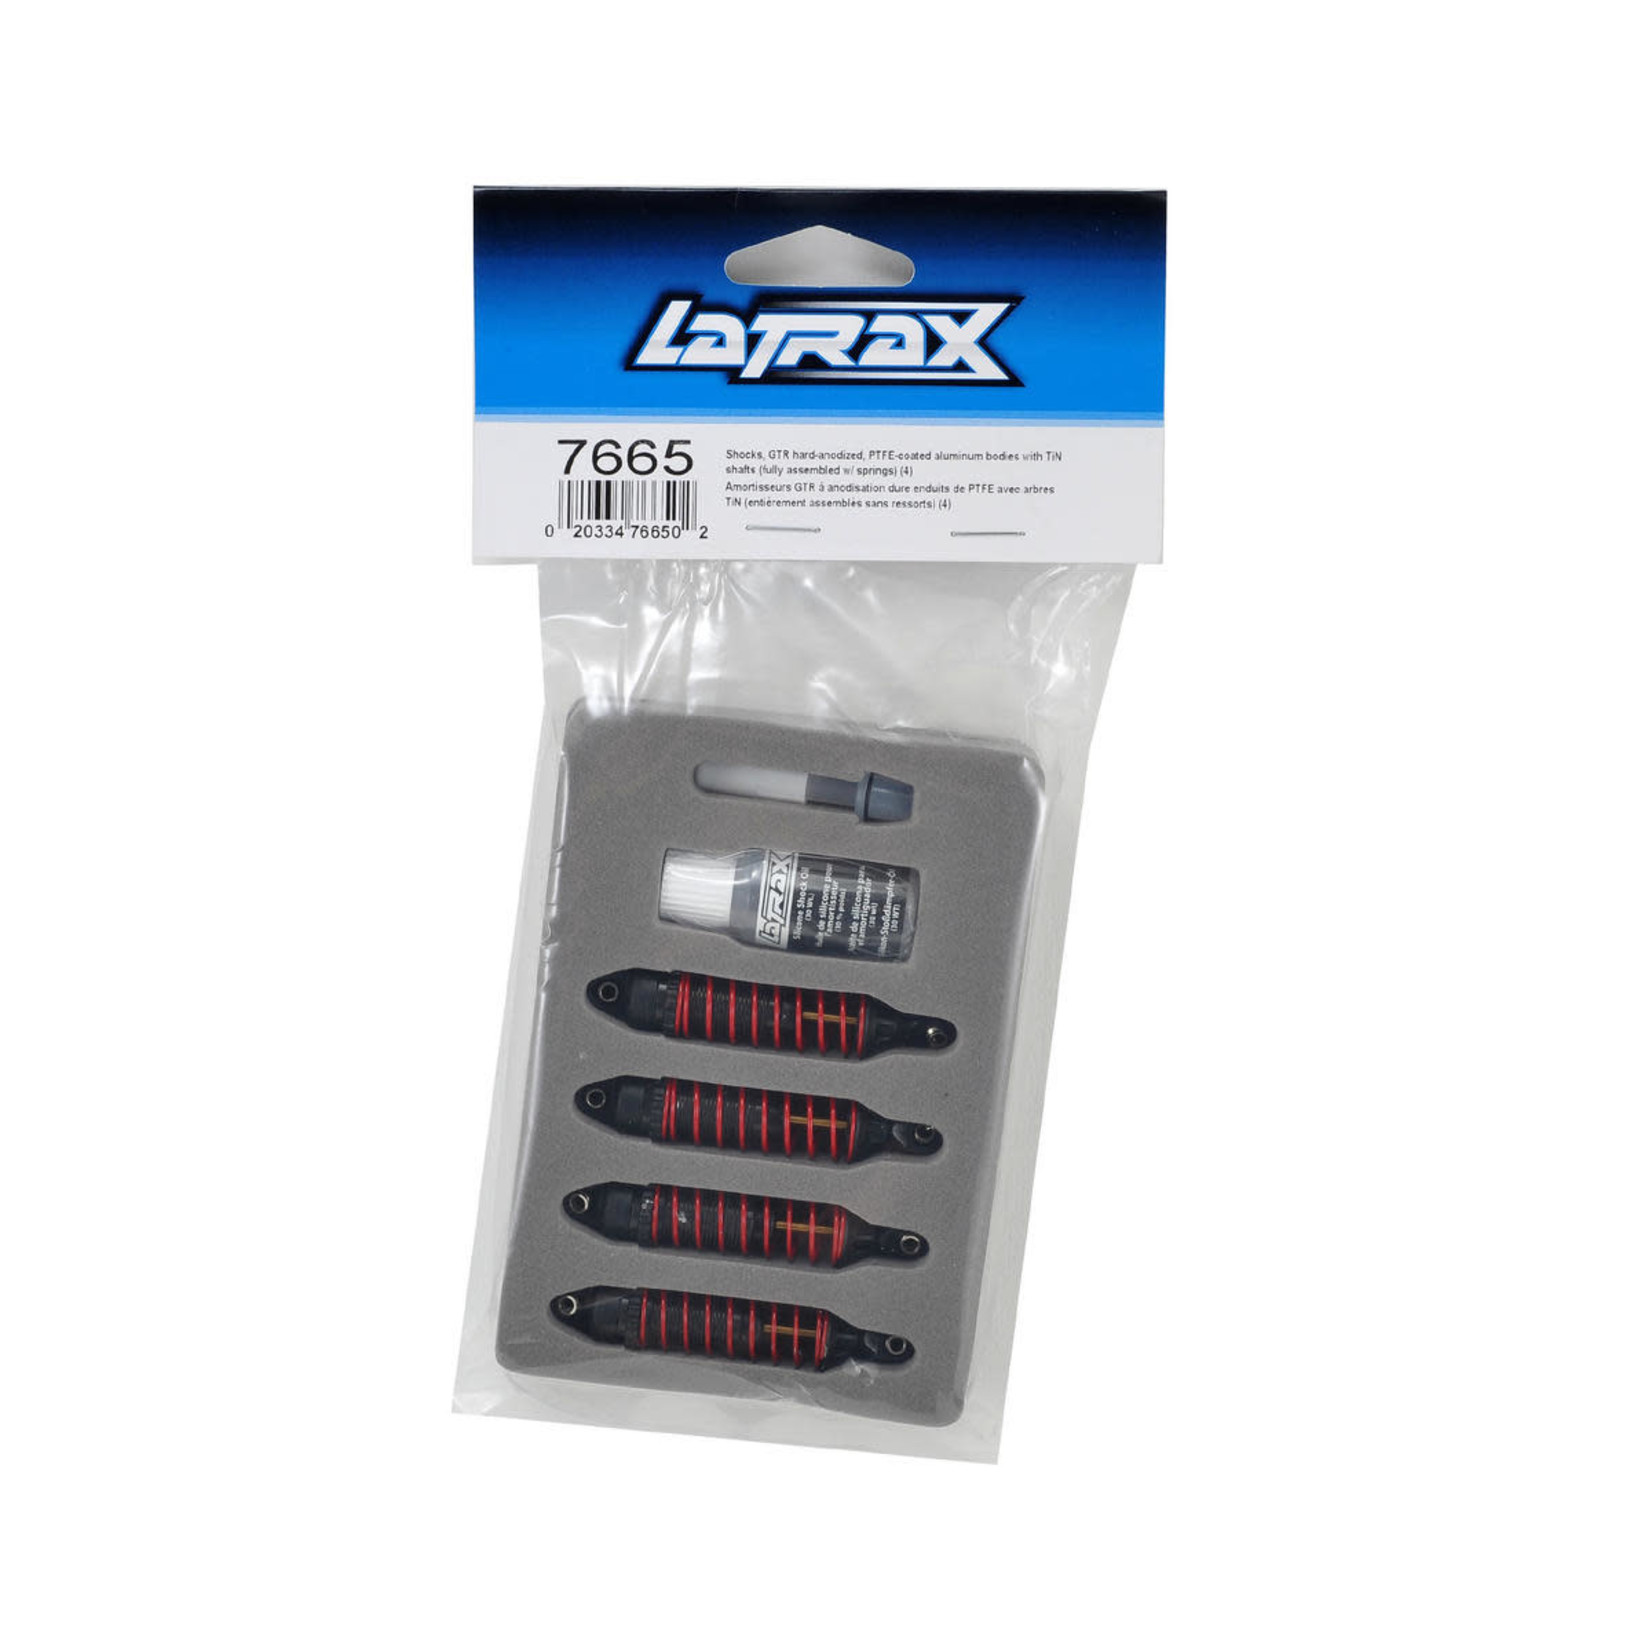 LaTrax Traxxas LaTrax Hard-Anodized GTR Shocks w/TiN shafts (4) #7665